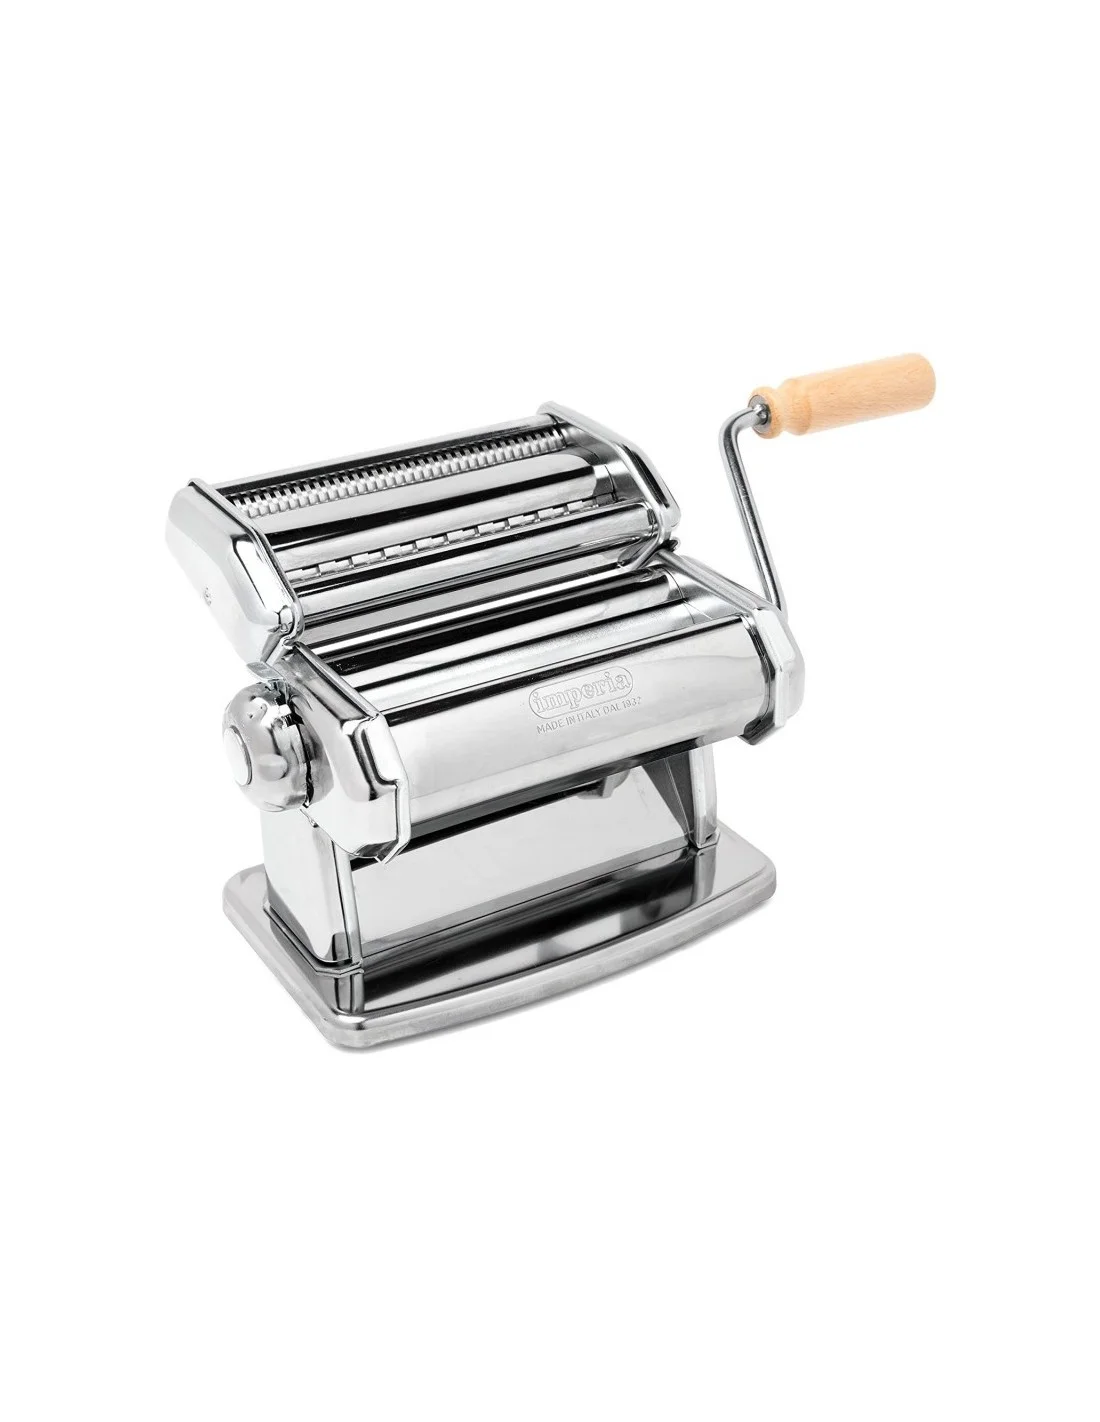 Manual pasta machine SP150 - IMPERIA 